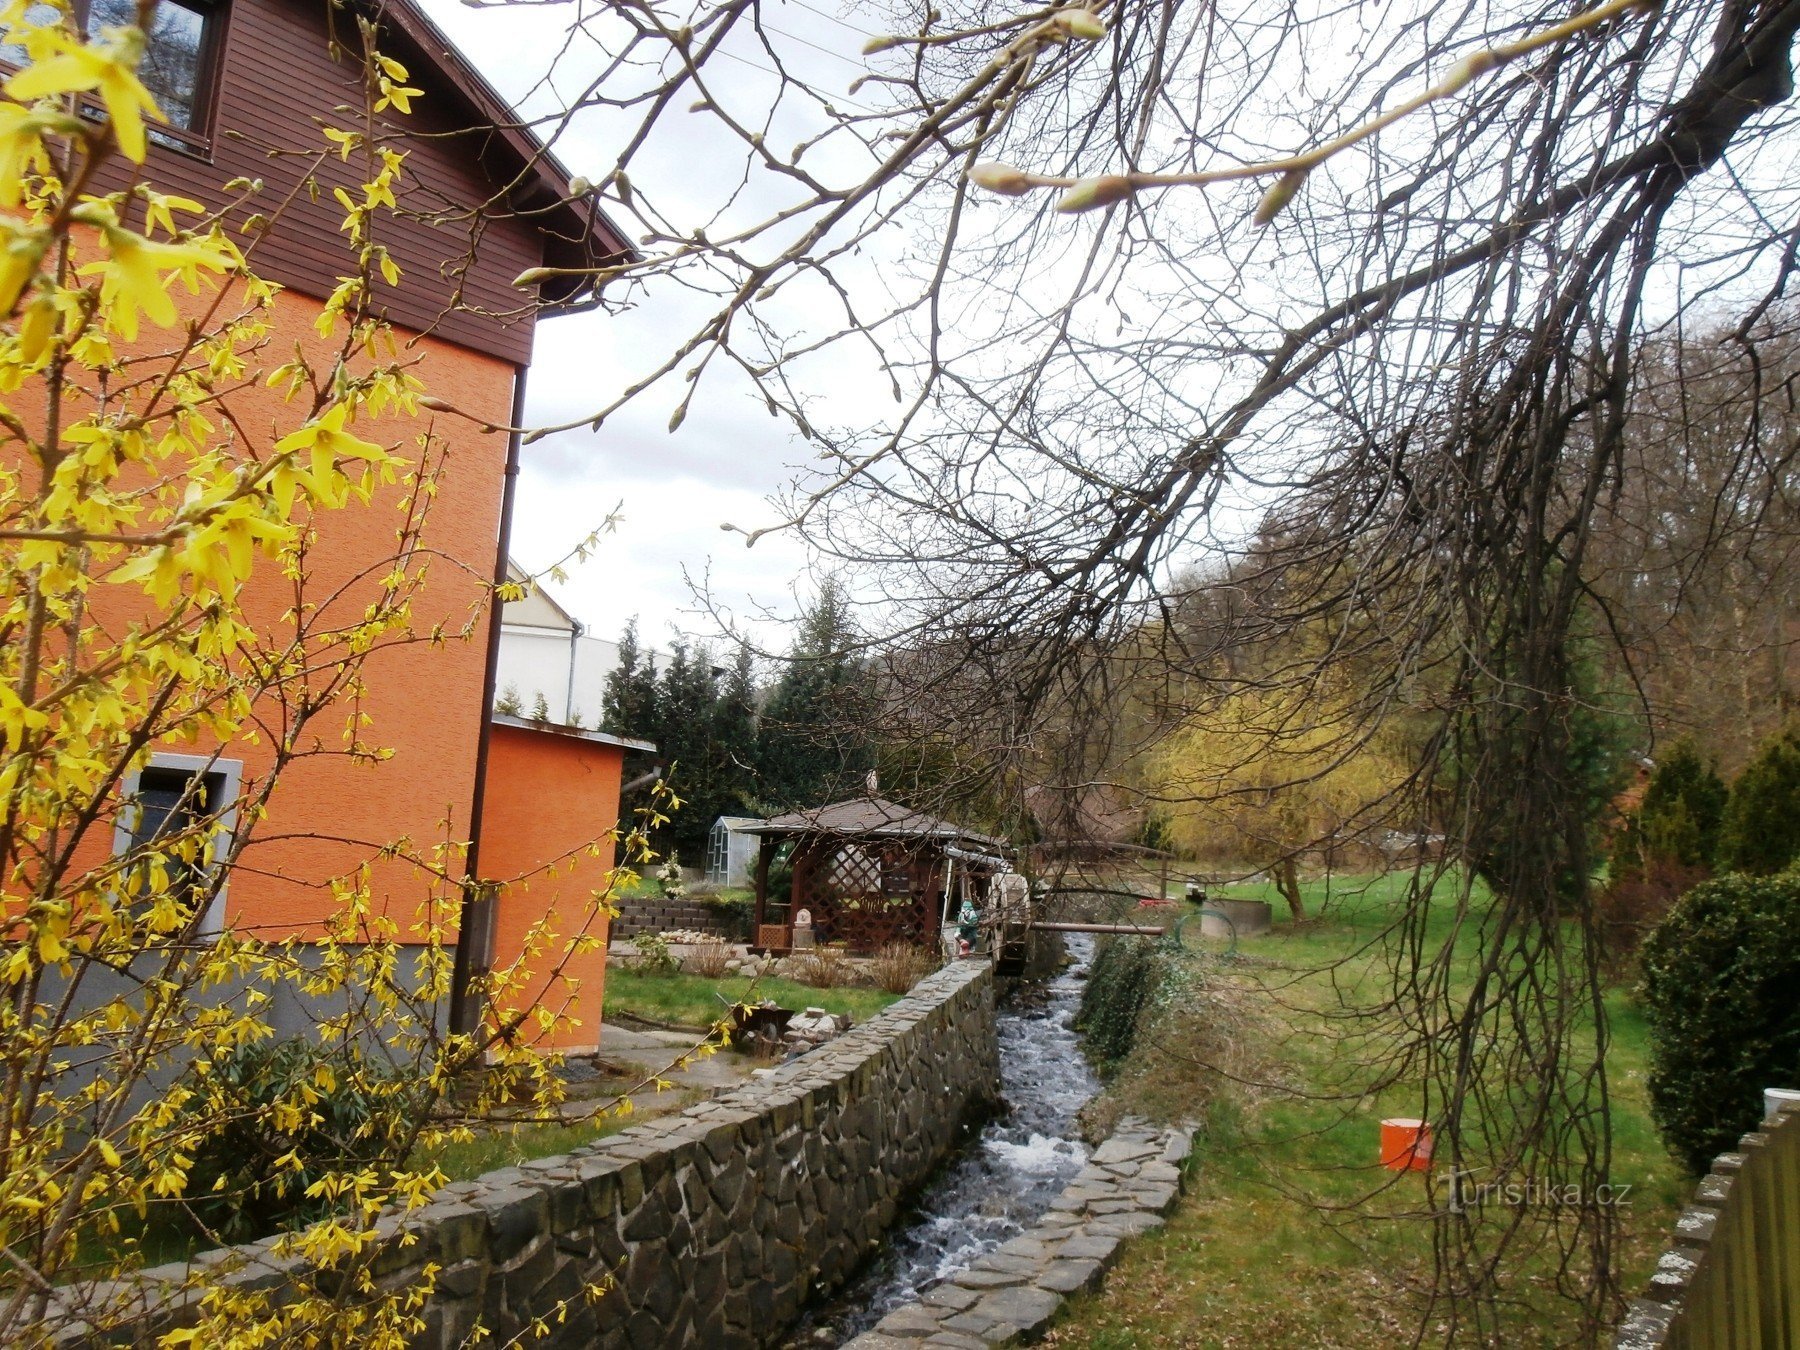 Domaslavický potok mit einem Bach und einem Mühlrad